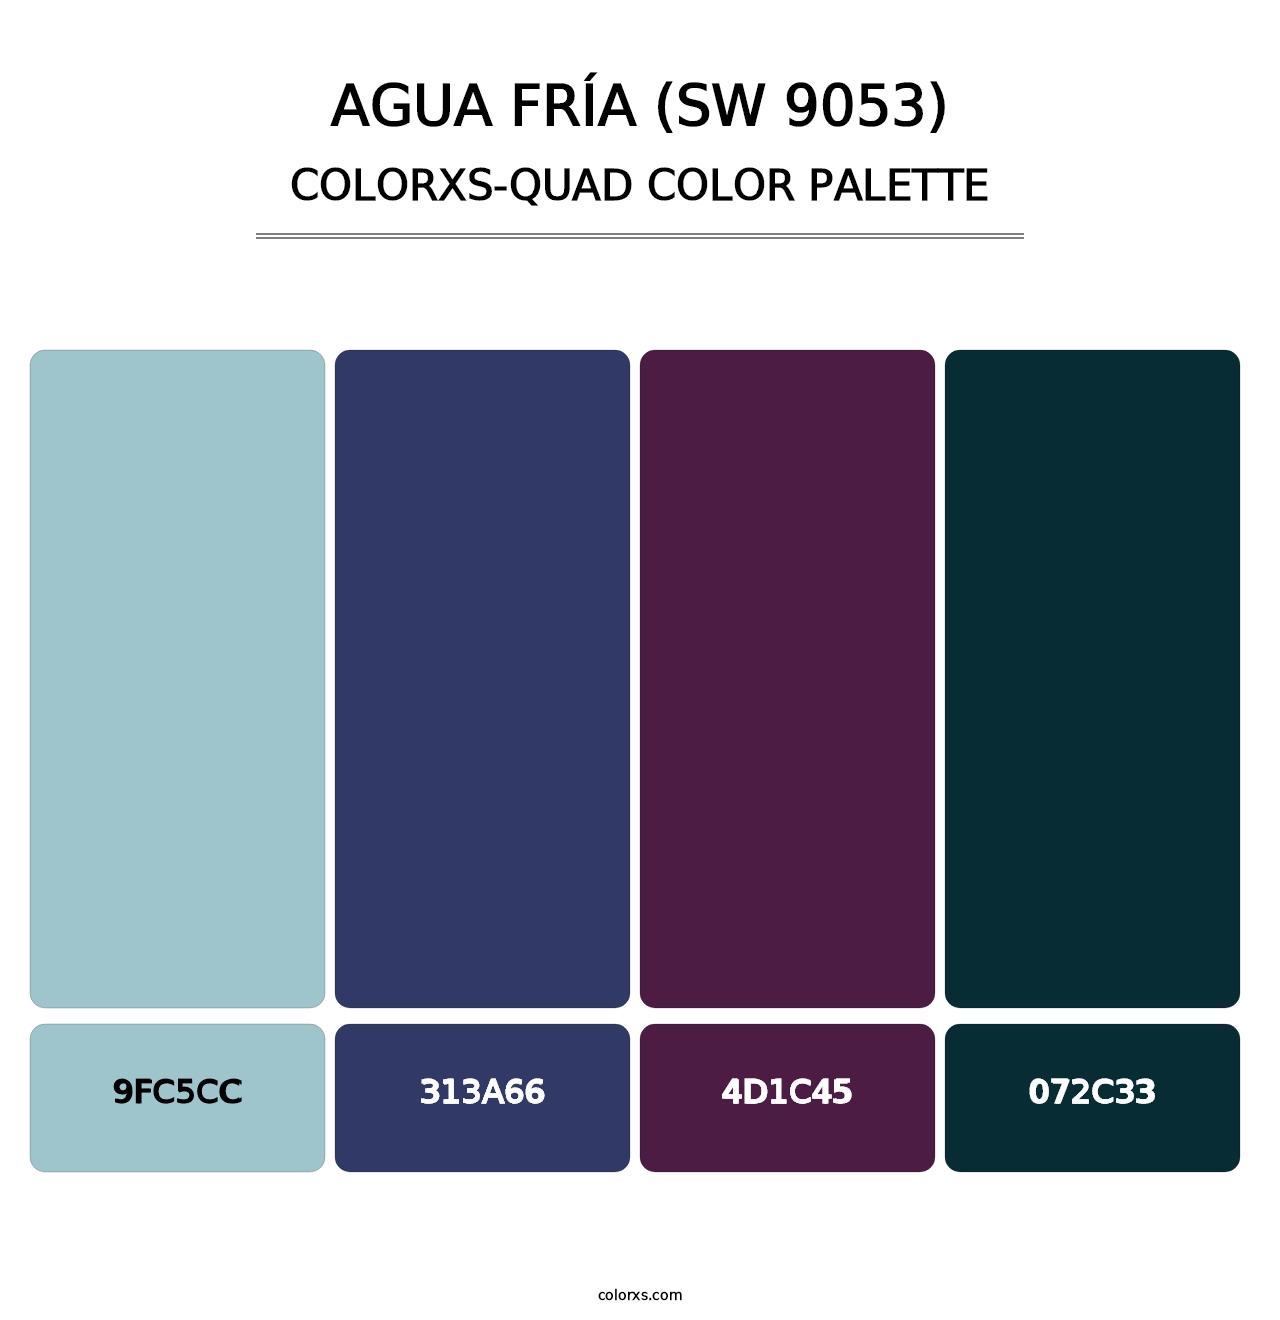 Agua Fría (SW 9053) - Colorxs Quad Palette